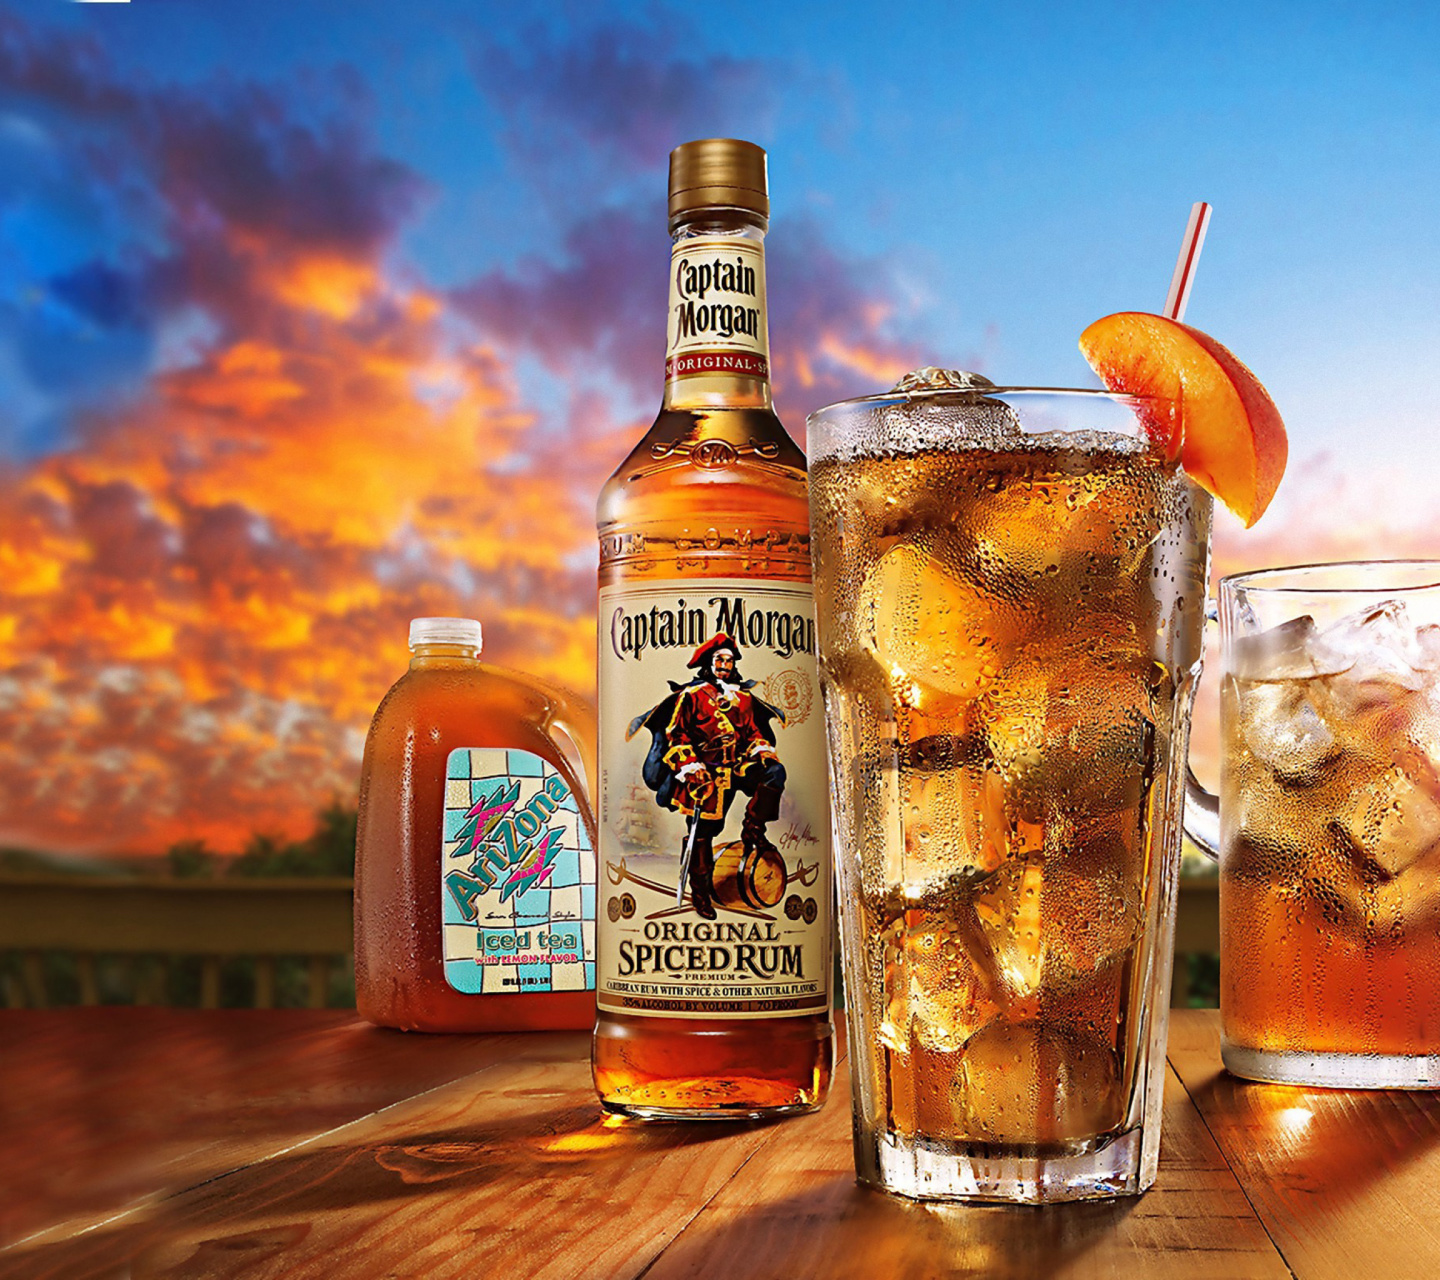 Captain Morgan Rum in Cuba Libre screenshot #1 1440x1280